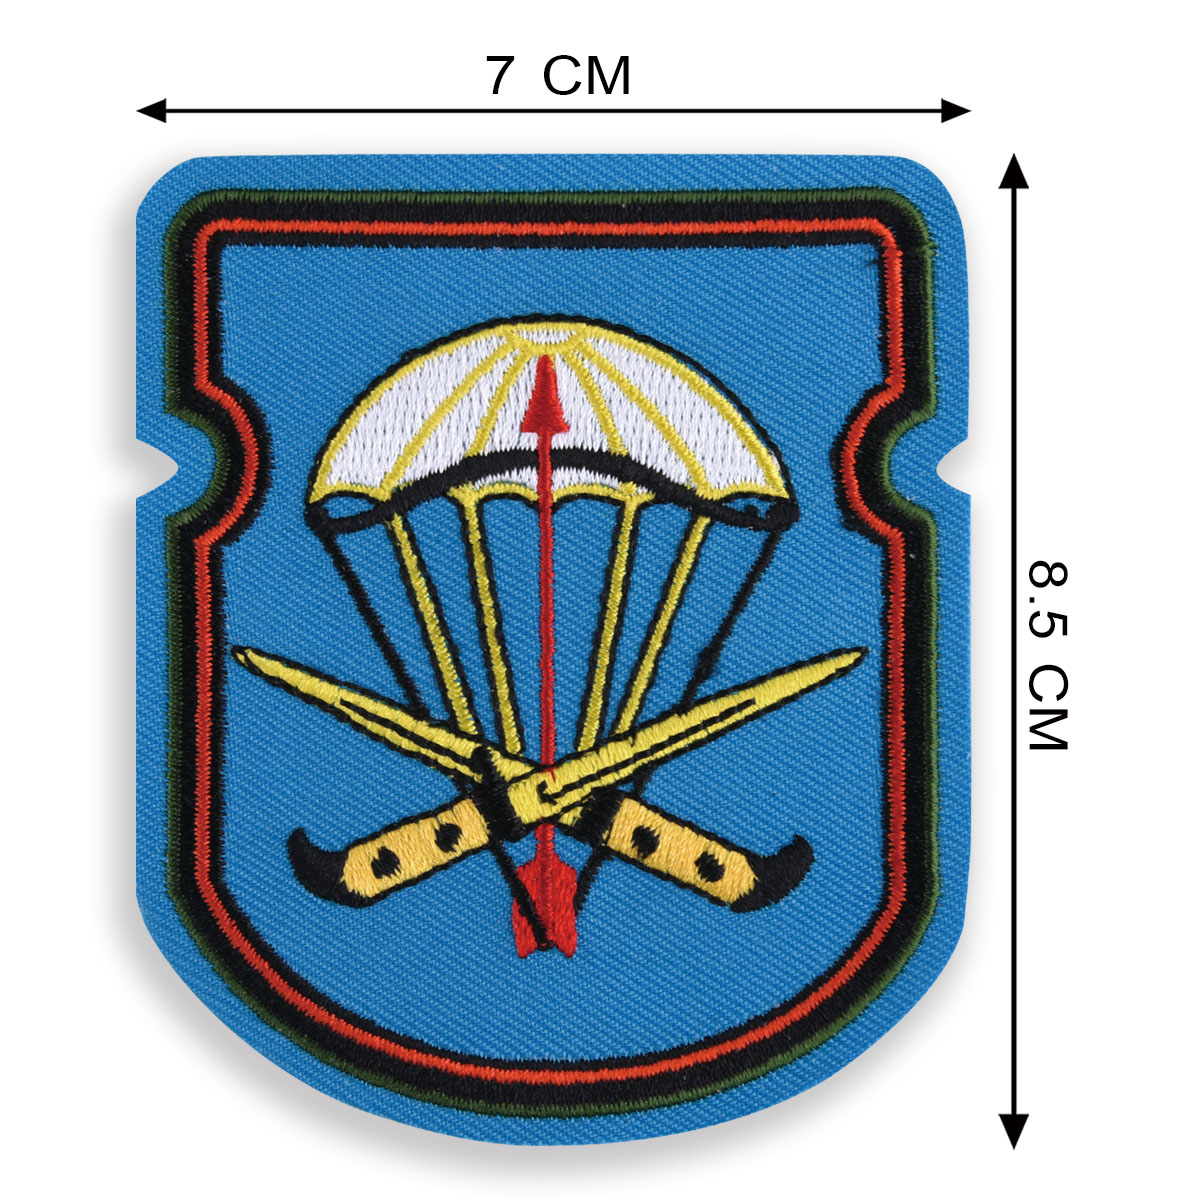 Нарукавный знак "54-й отдельный десантно-штурмовой батальон 31 гв. ОДШБр" 